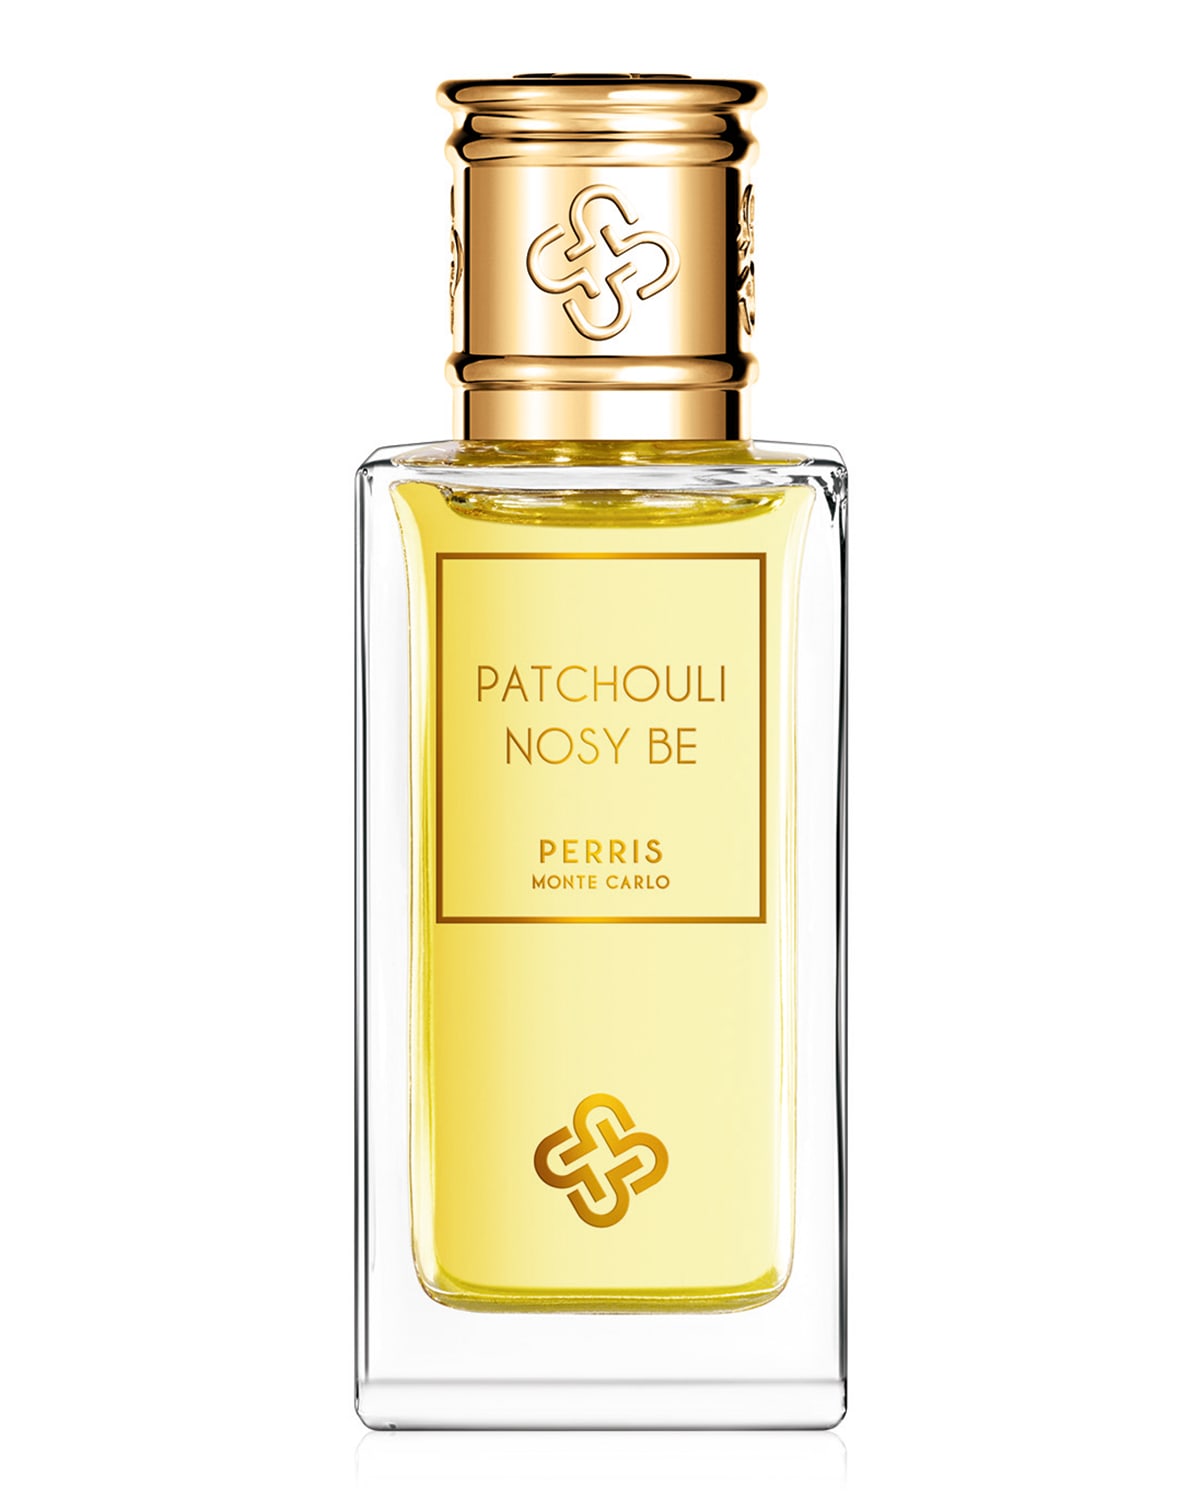 Perris Monte Carlo Patchouli Nosy Be Extrait de Parfum, 1.7 oz./ 50 mL